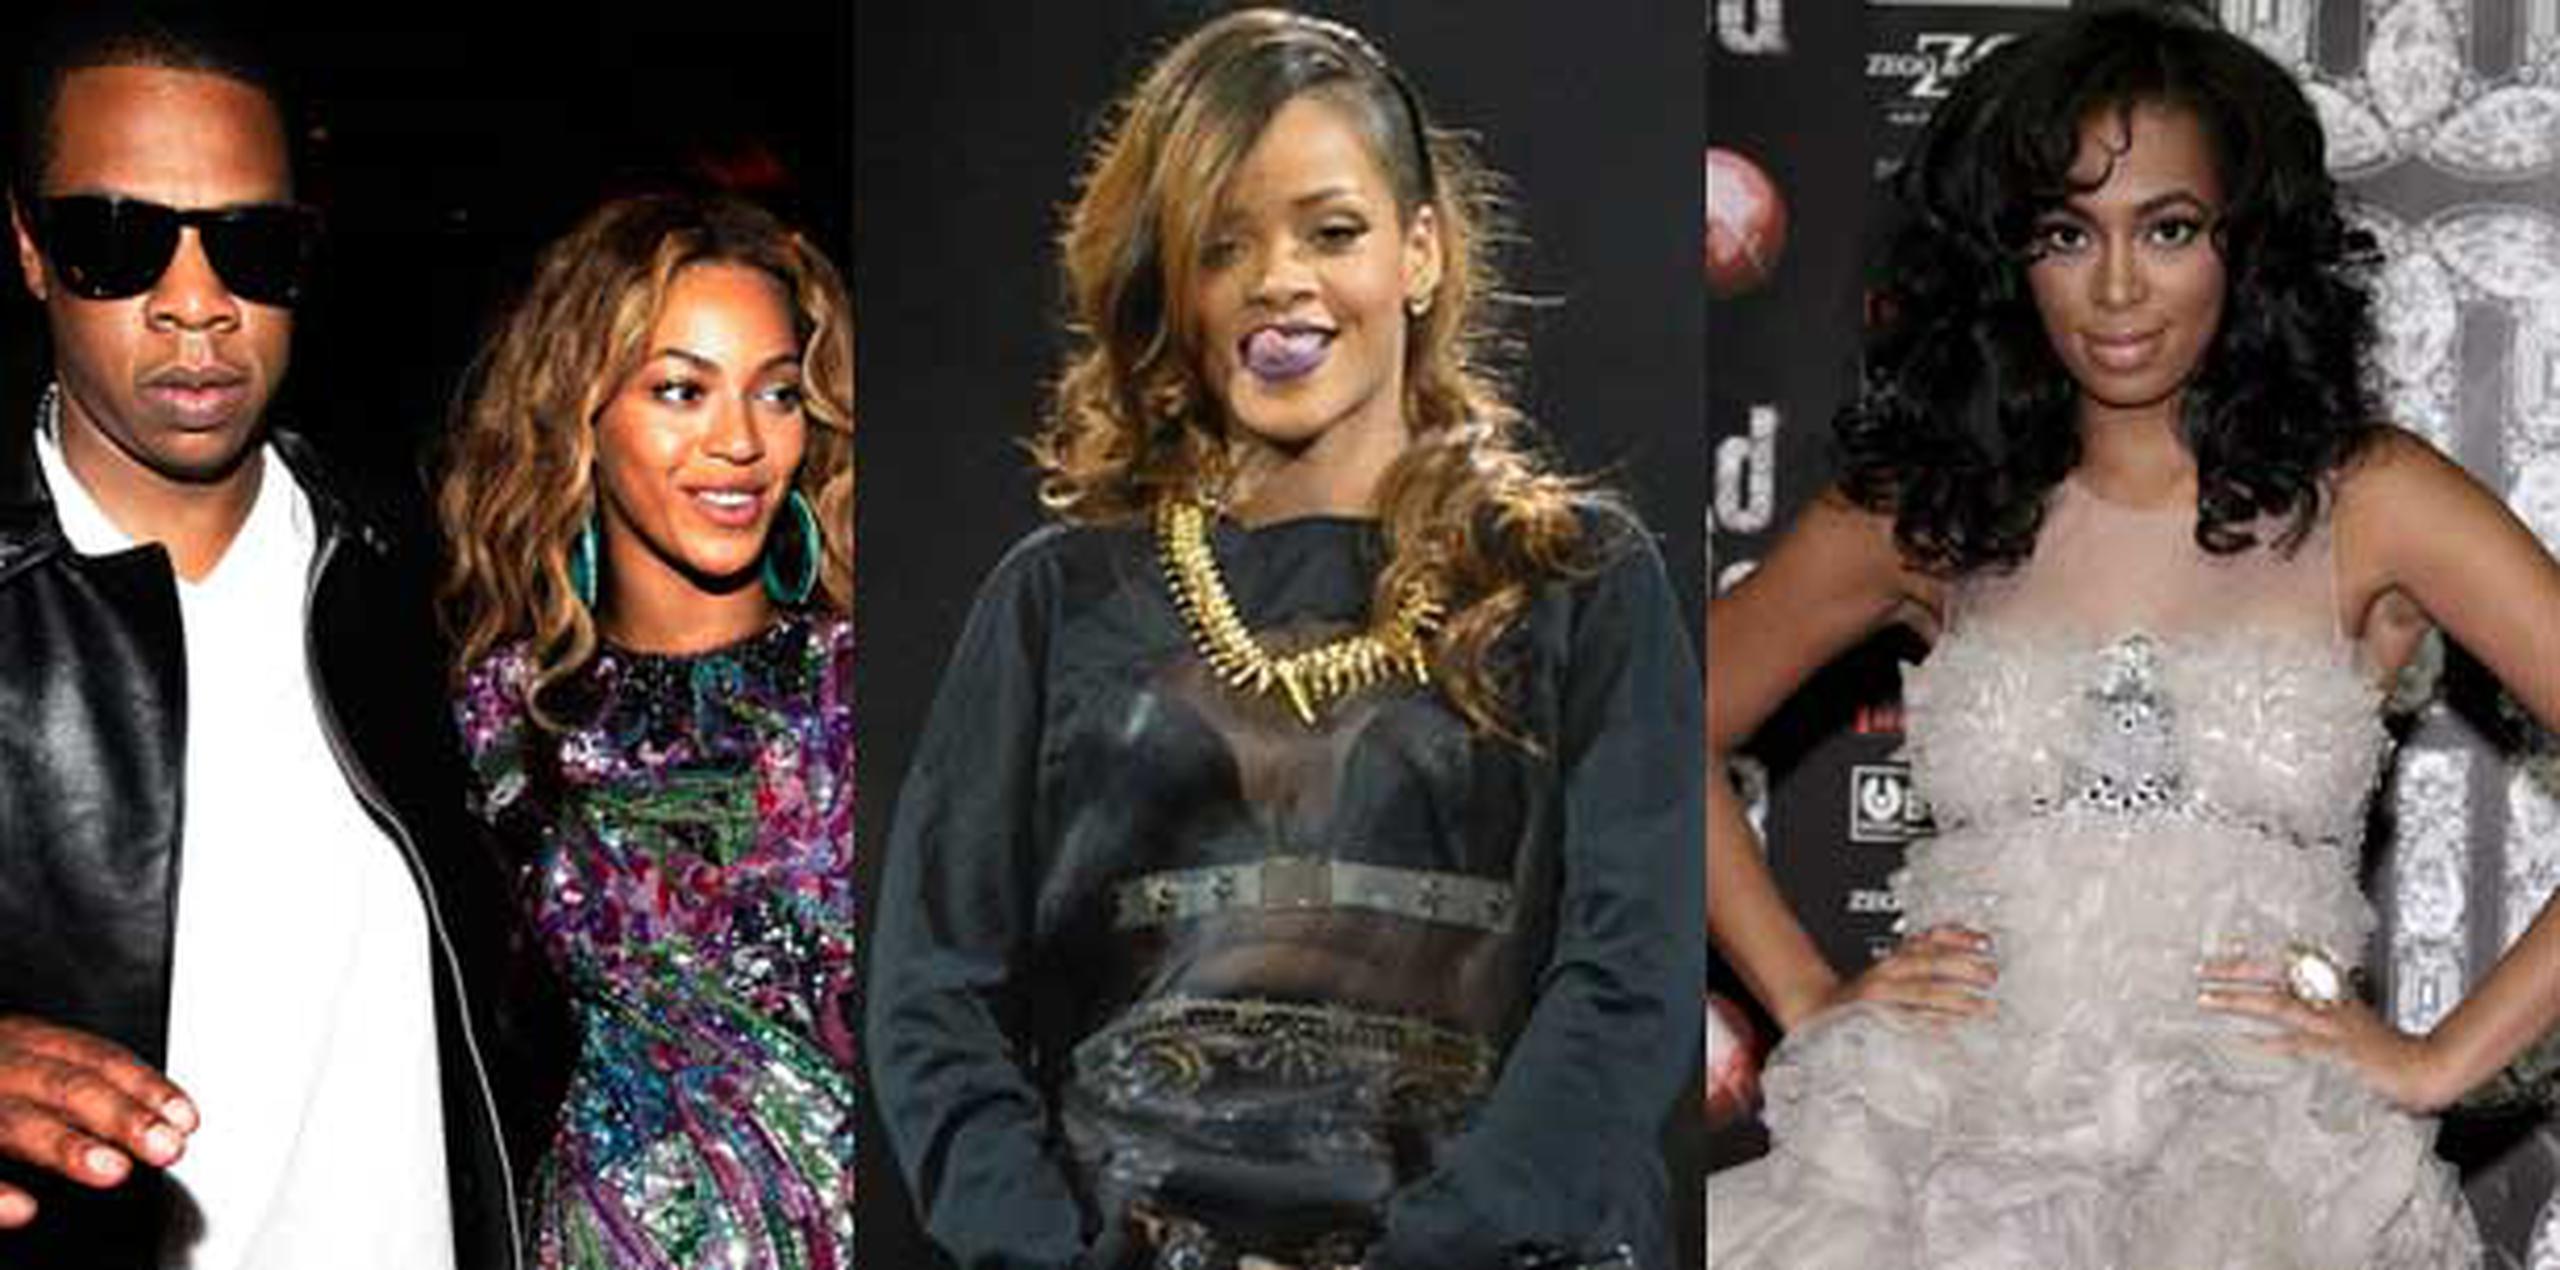 Al parecer el rapero quería ir solo a la fiesta que organizaba Rihanna. (Archivo)